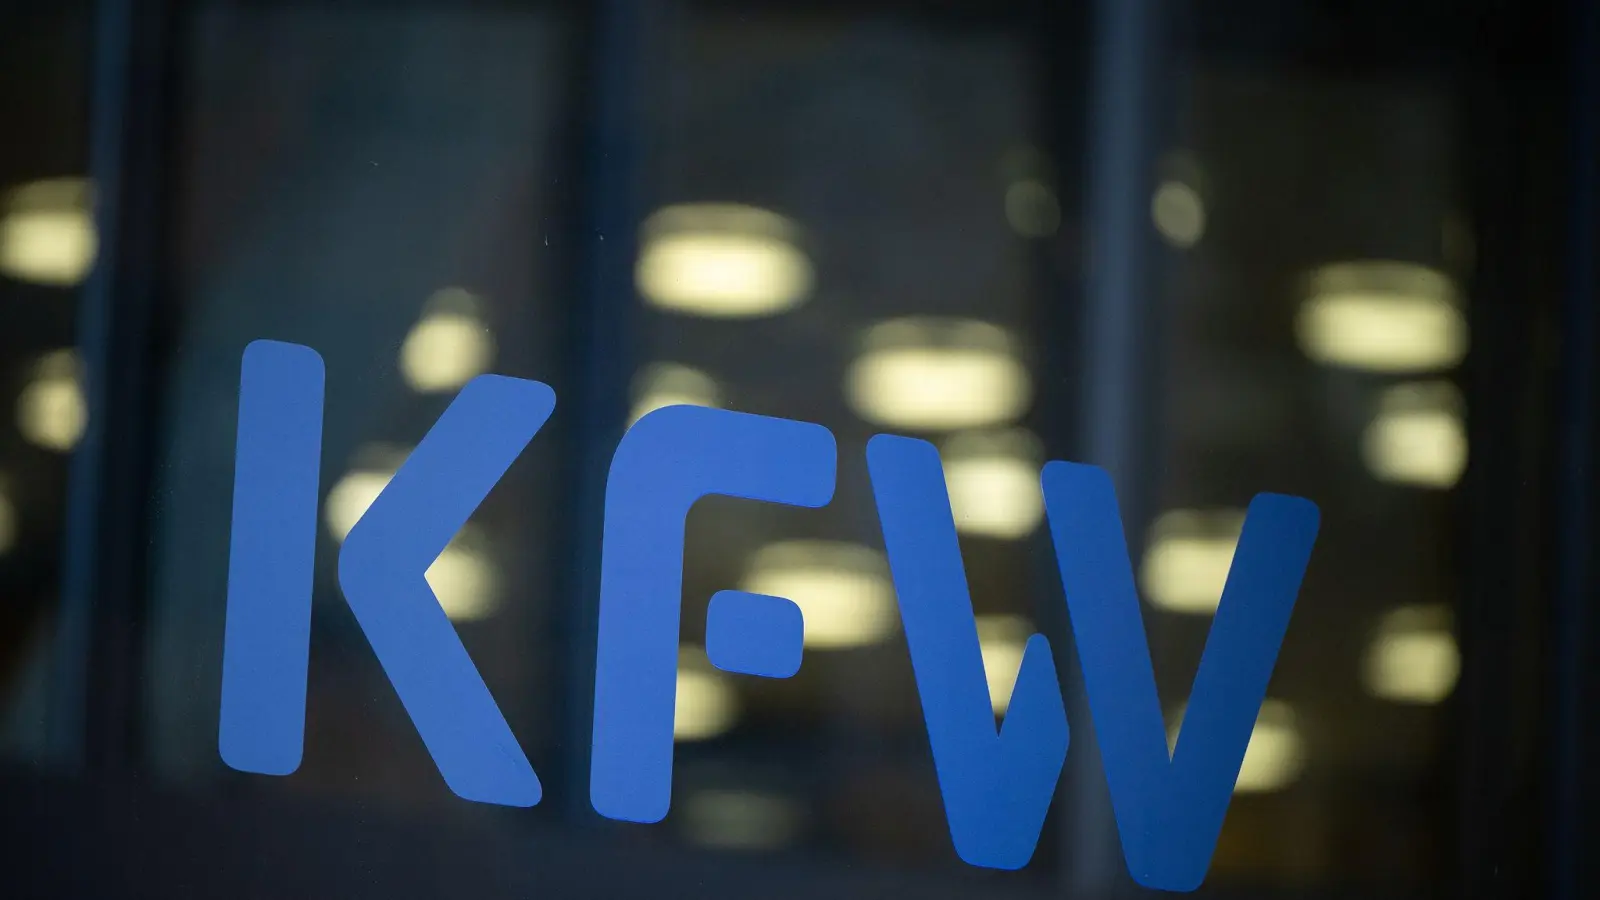 Die staatliche Förderbank KfW feiert in diesem Jahr ihr 75-jähriges Bestehen. (Foto: Sebastian Christoph Gollnow/dpa)